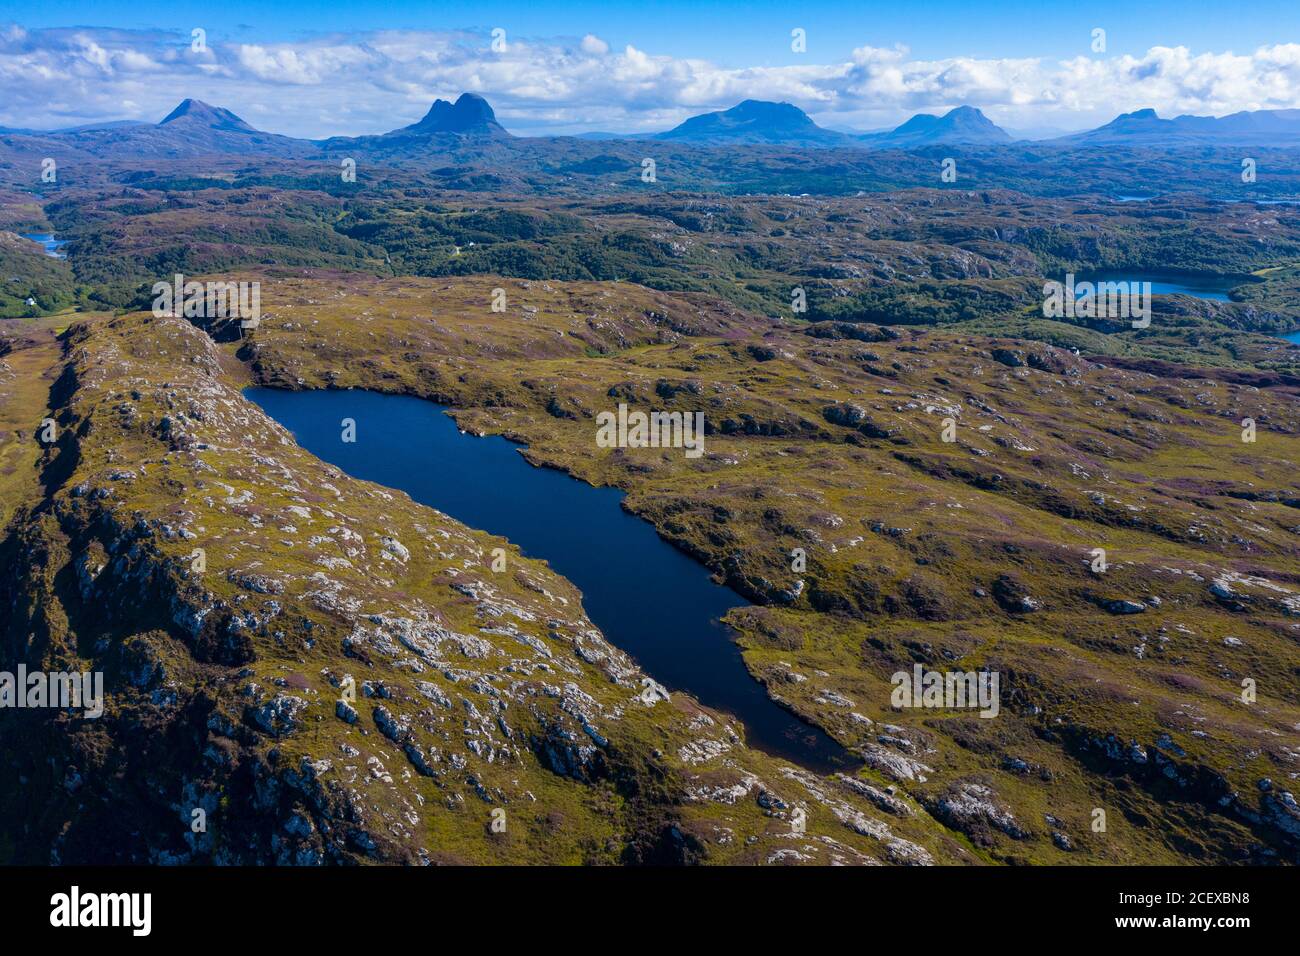 Vue aérienne sur les montagnes de la région d'Assynt Coigach, dans les Highlands écossais, en Écosse, au Royaume-Uni Banque D'Images